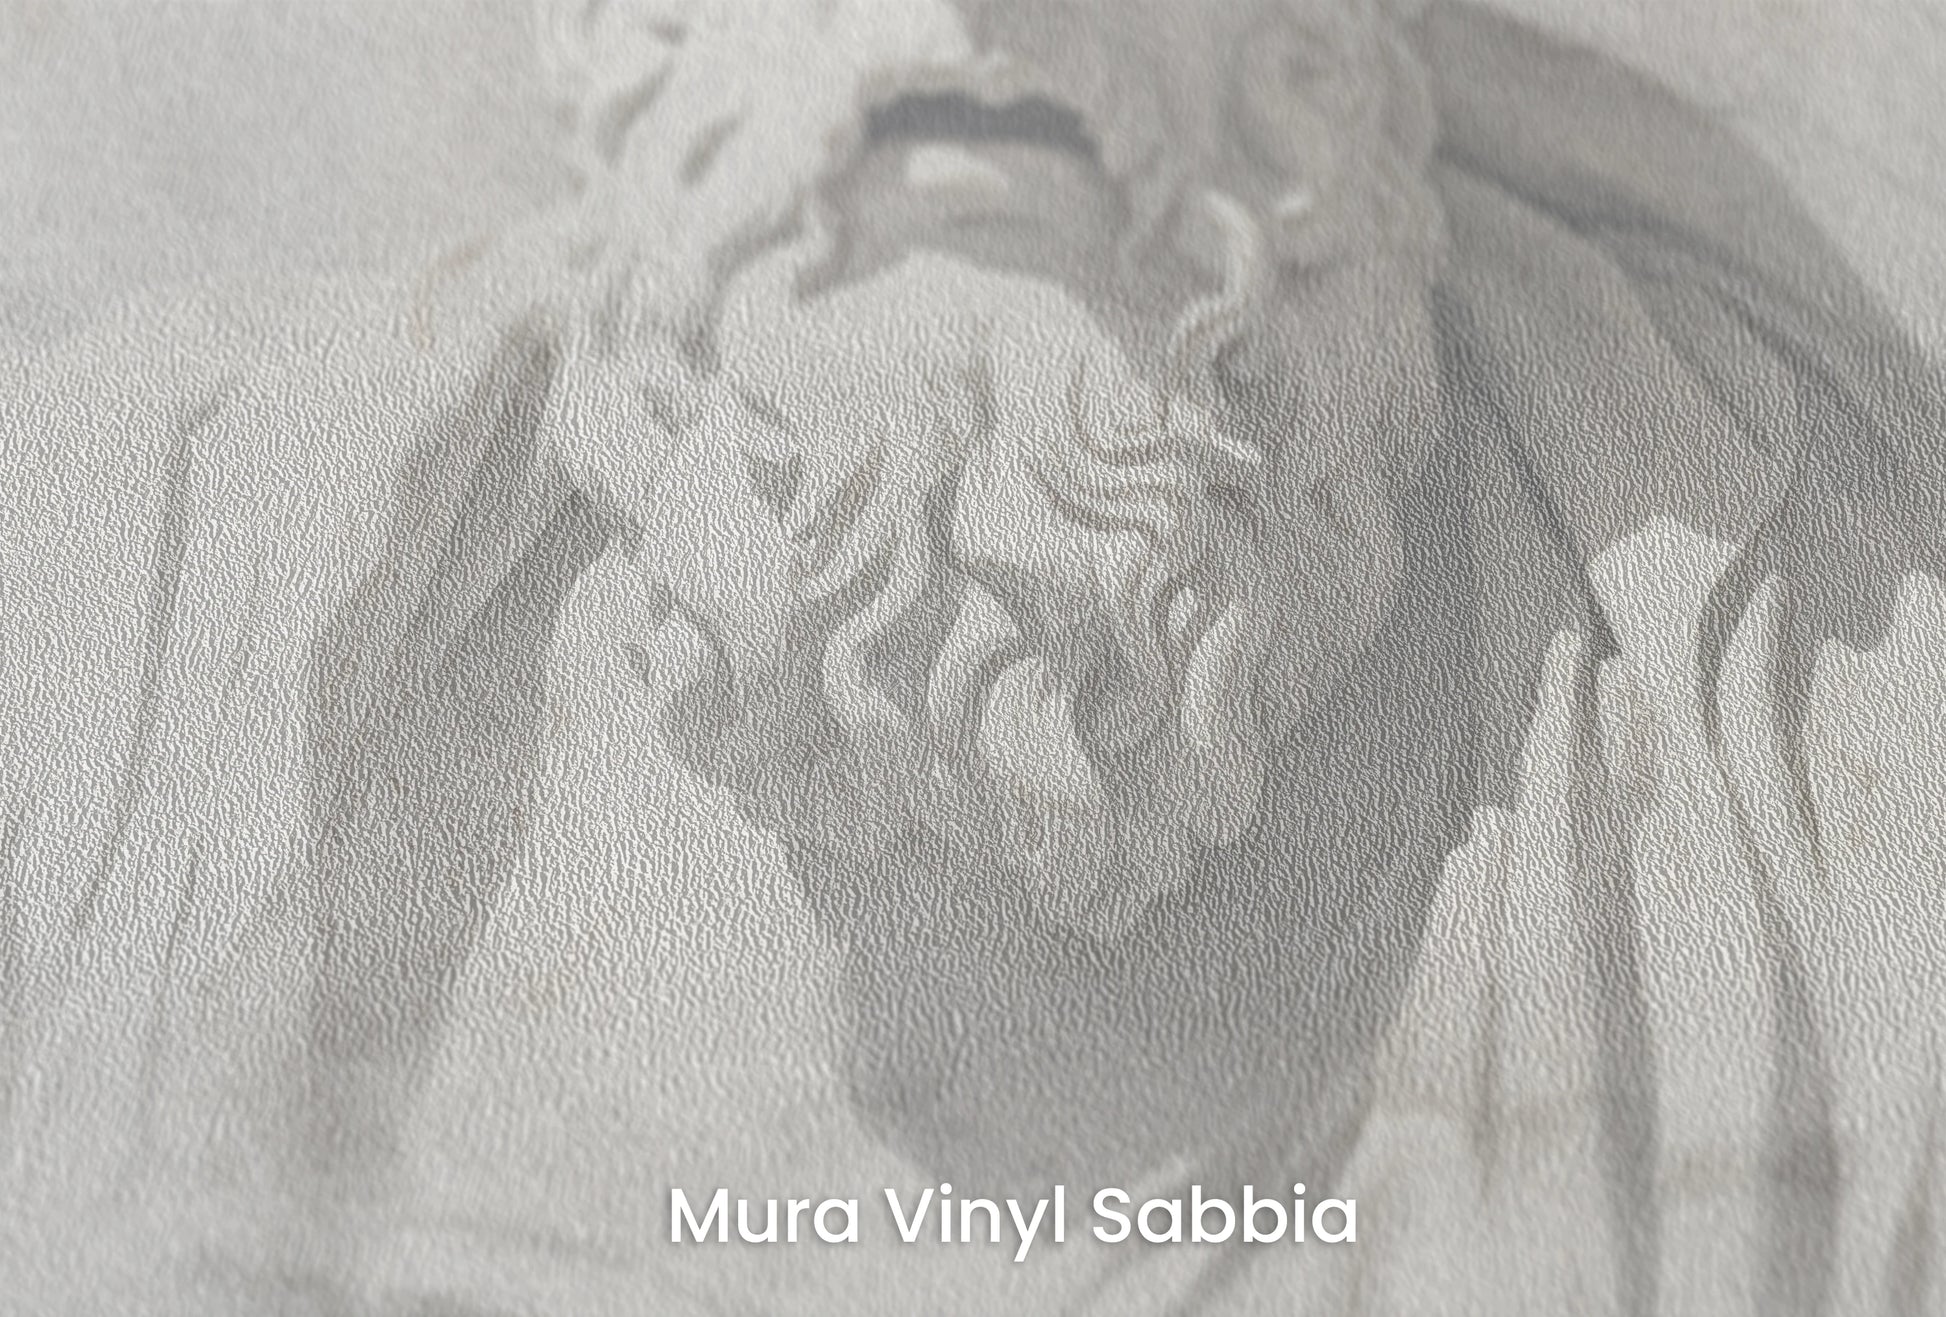 Zbliżenie na artystyczną fototapetę o nazwie Grecian Introspection na podłożu Mura Vinyl Sabbia struktura grubego ziarna piasku.